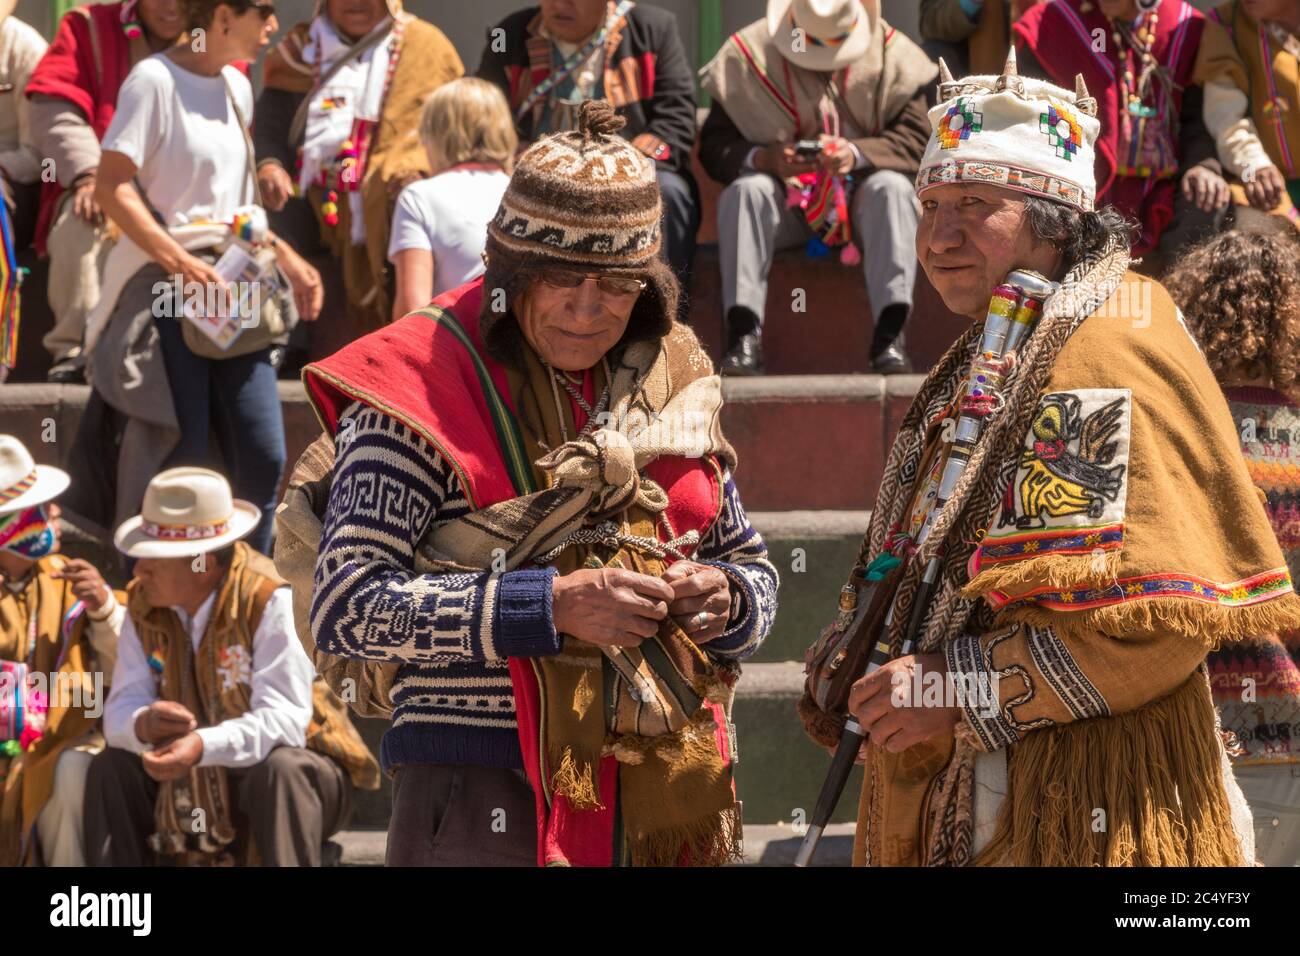 La Paz, Bolivia - 30 de septiembre de 2018: Brujo de medicina tradicional boliviano actúa en la plaza de San Francisco frente a una multitud de telas tradicionales Foto de stock